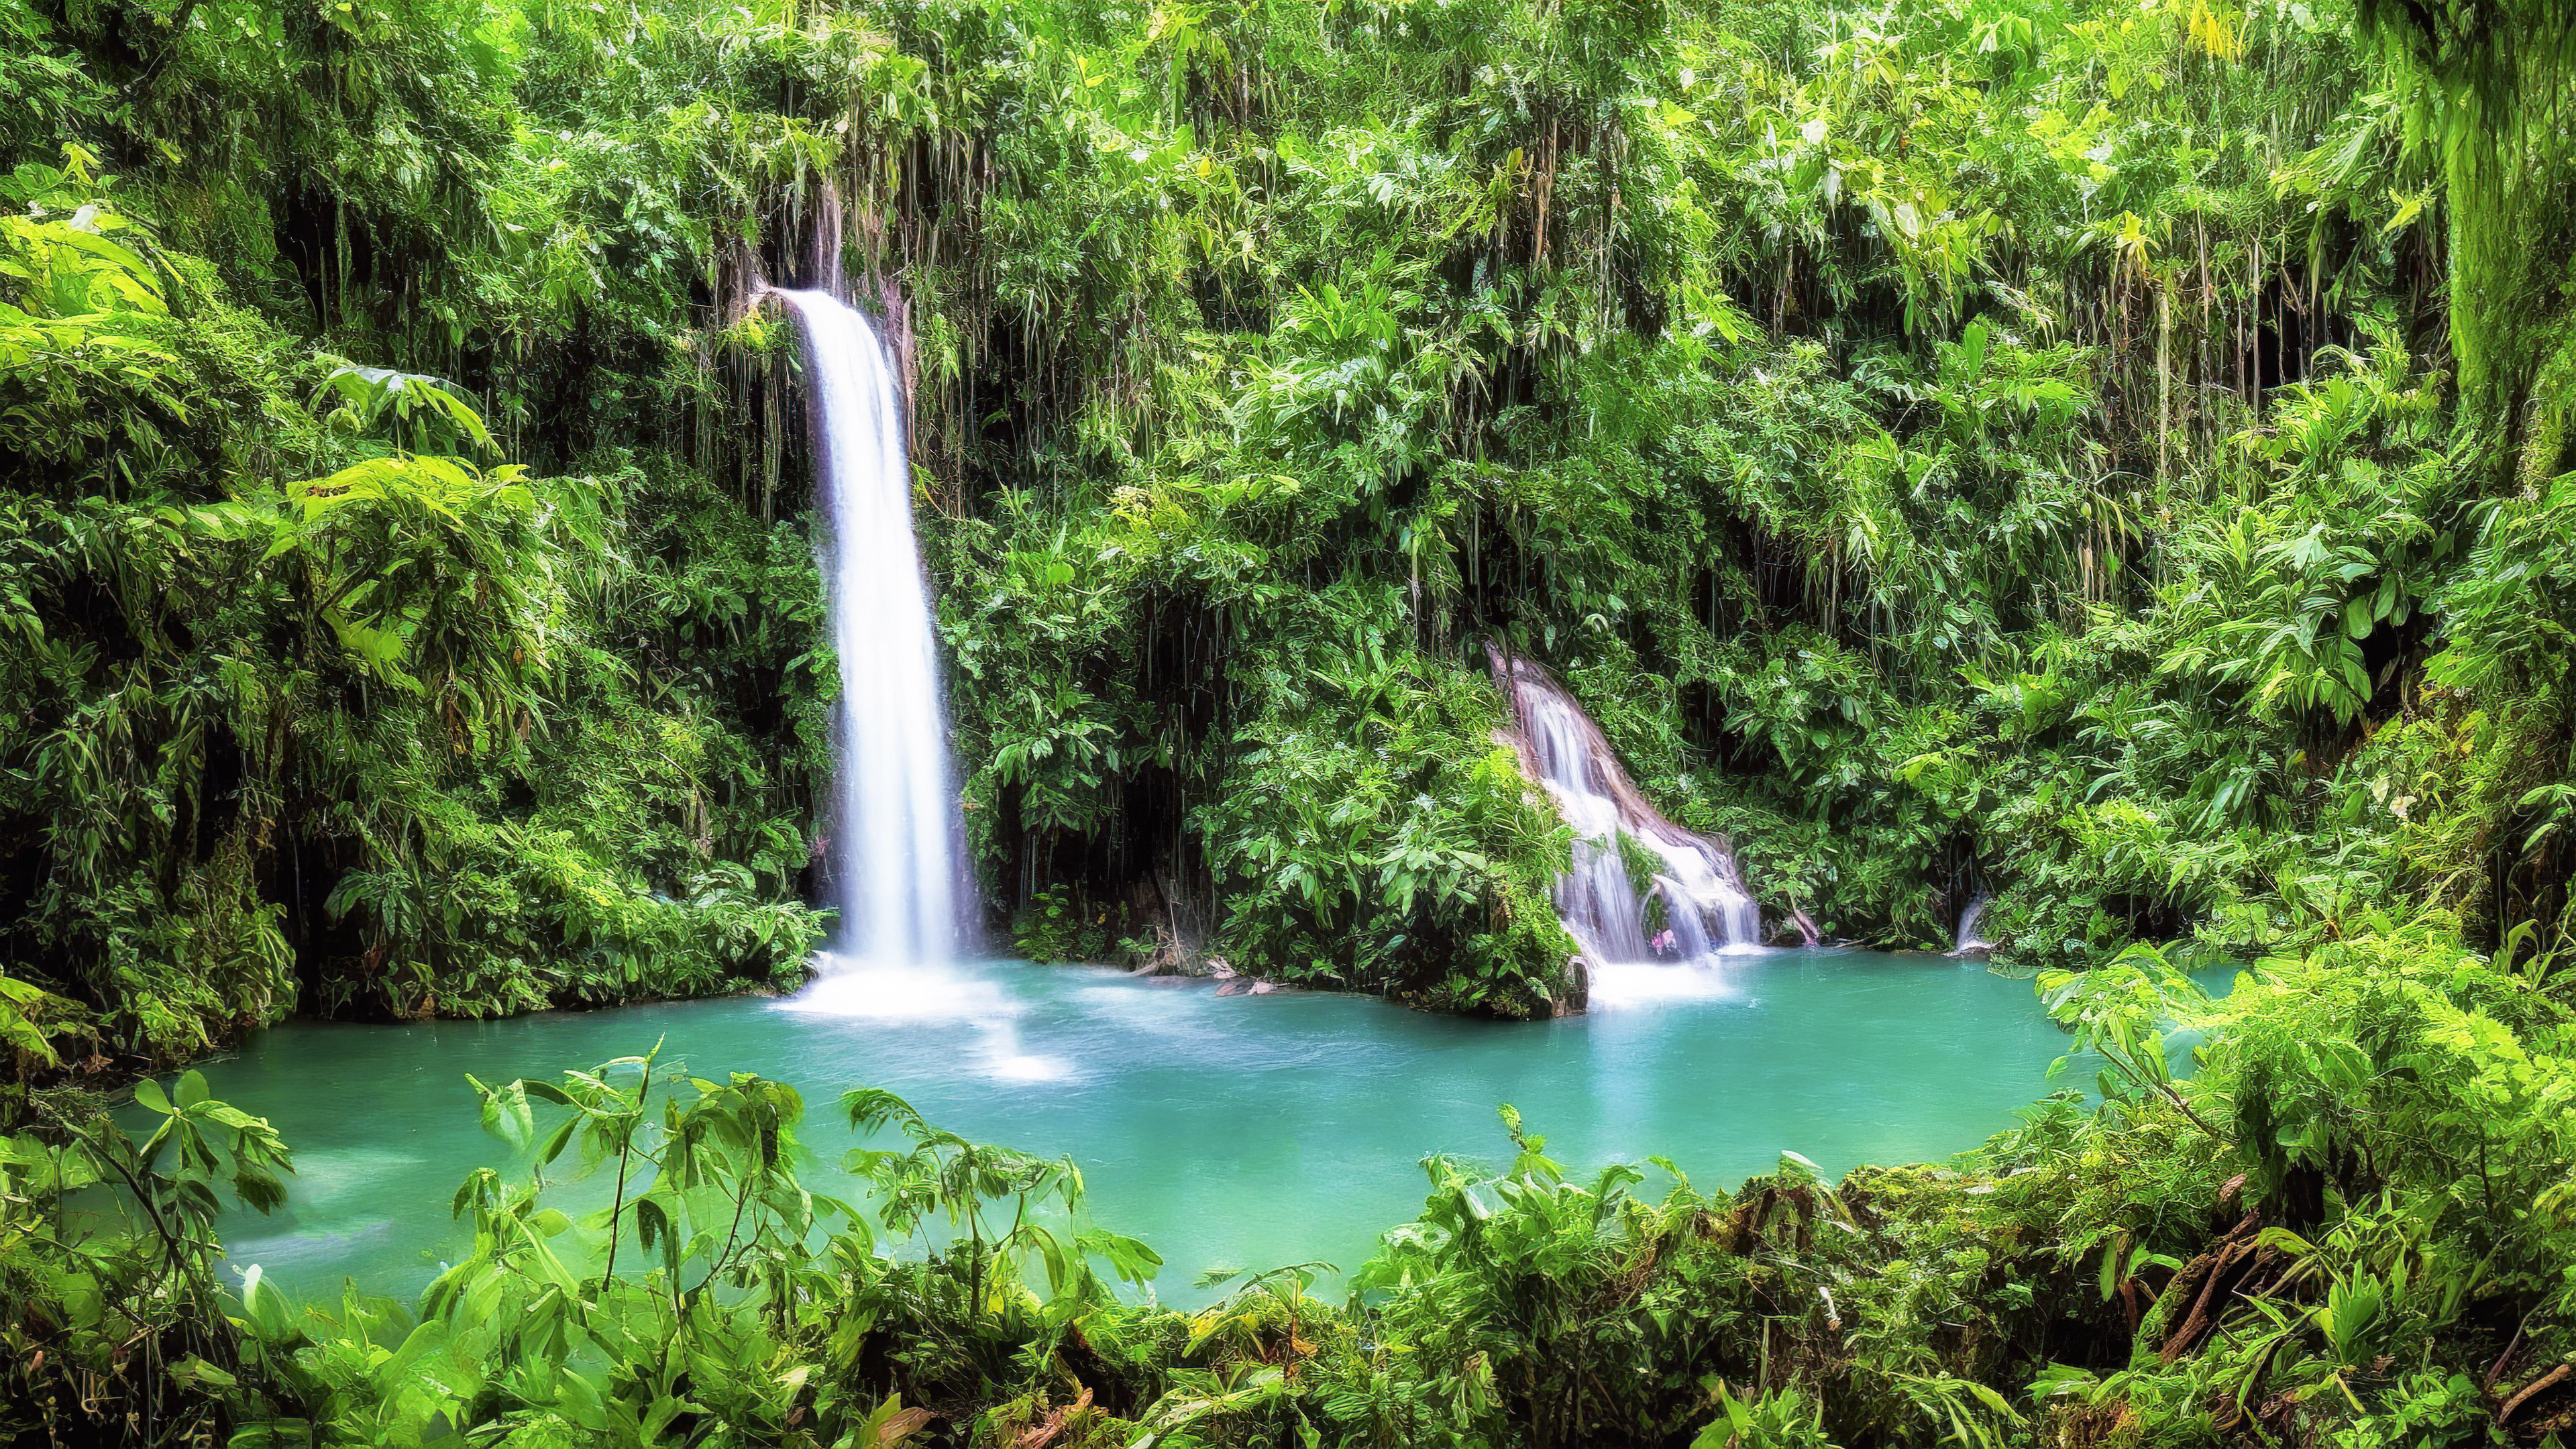 Découvrez l'enchantement de notre fond d'écran de paysage vert, présentant une cascade enchantée cachée au plus profond de la luxuriante forêt tropicale émeraude.